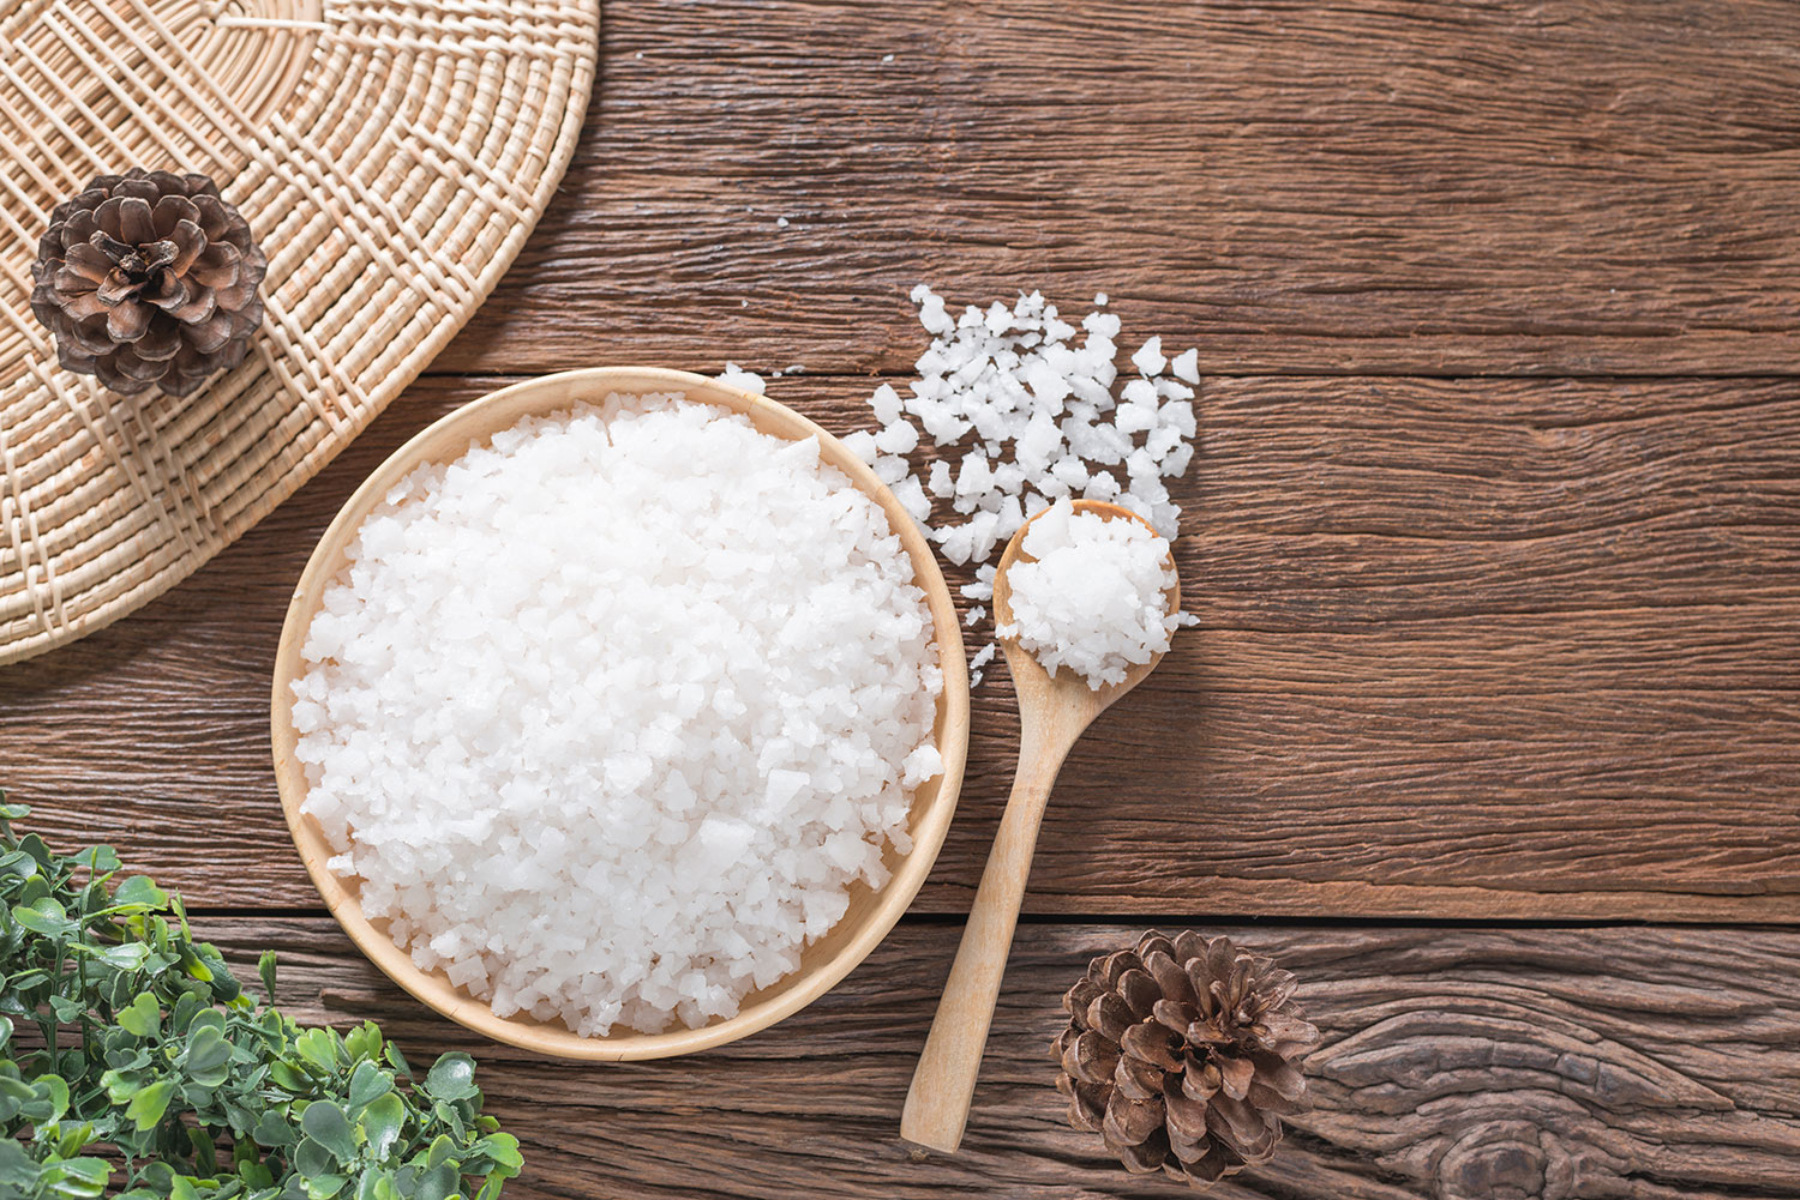 Θαλασσινό αλάτι: Πώς μπορεί το θαλασσινό αλάτι να βελτιώσει την υγεία της επιδερμίδας μας;